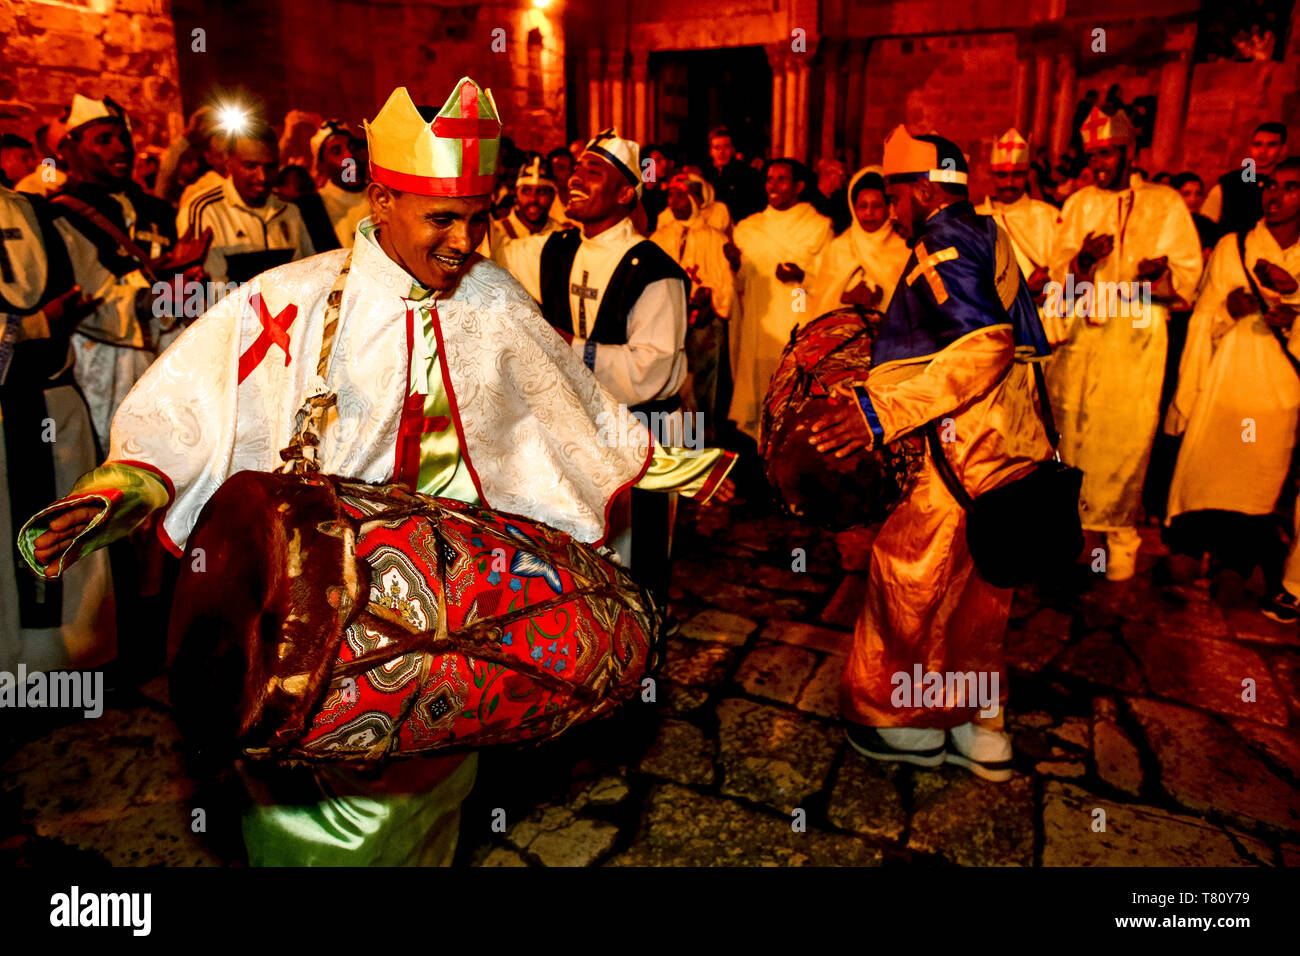 Les chrétiens orthodoxes éthiopiens célébrer Pâques, manifestation silencieuse devant l'église du Saint Sépulcre, Jérusalem, Israël, Moyen Orient Banque D'Images